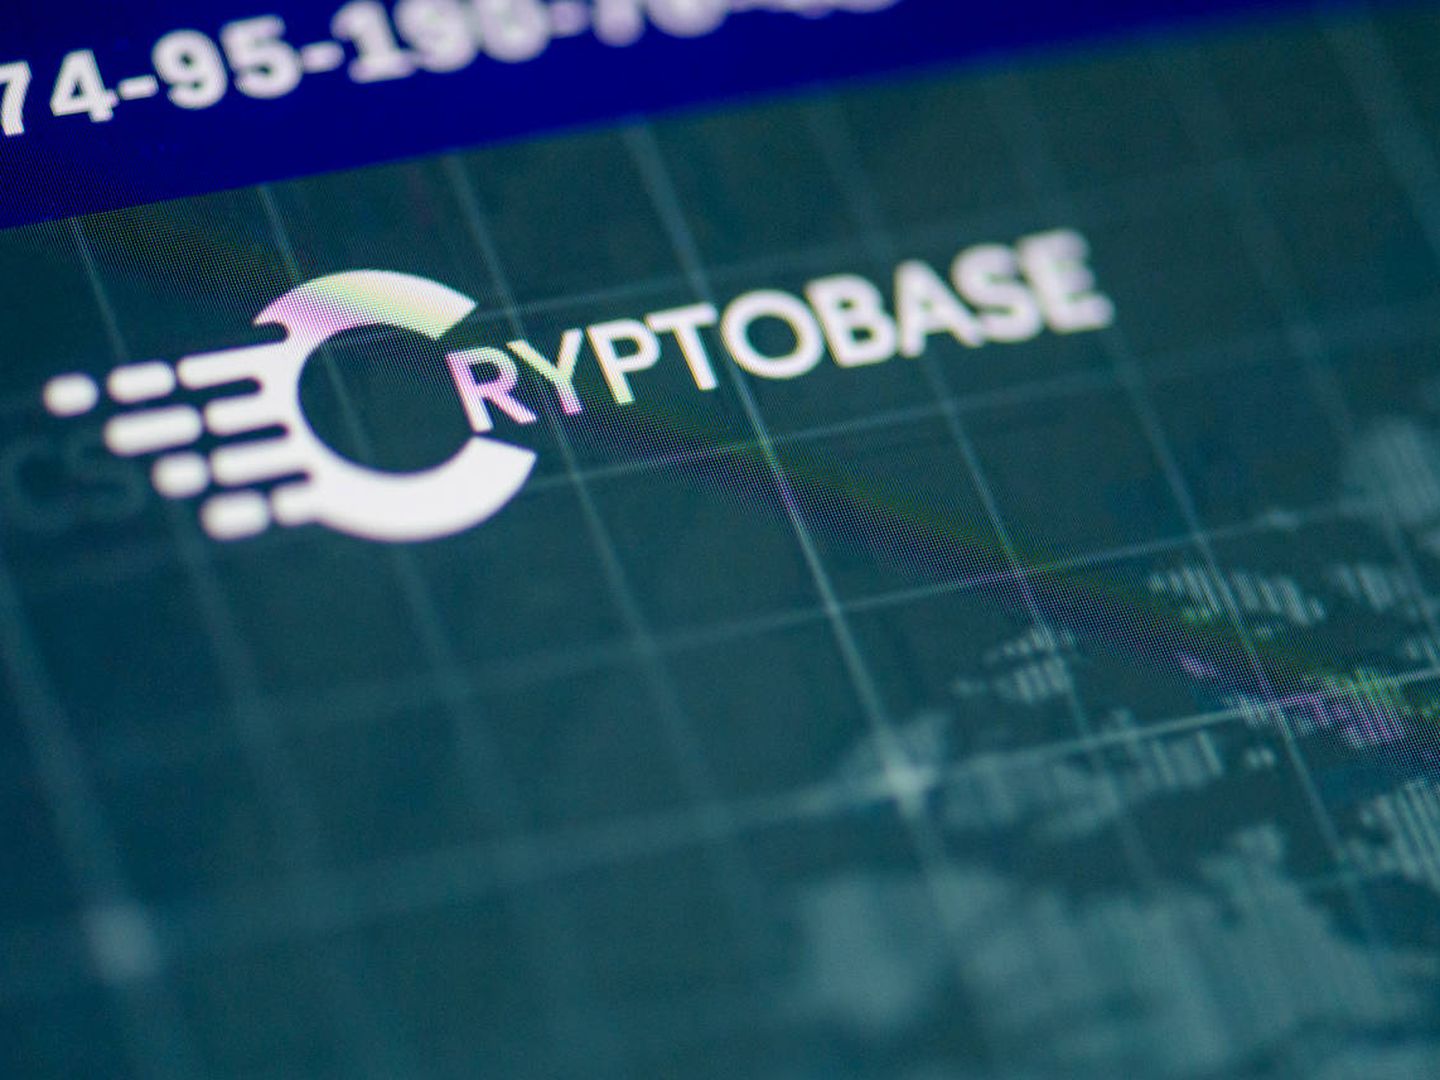 Cryptobase es una de las plataformas de inversión simulada.(Alexander Mahmoud/'Dagens Nyheter')